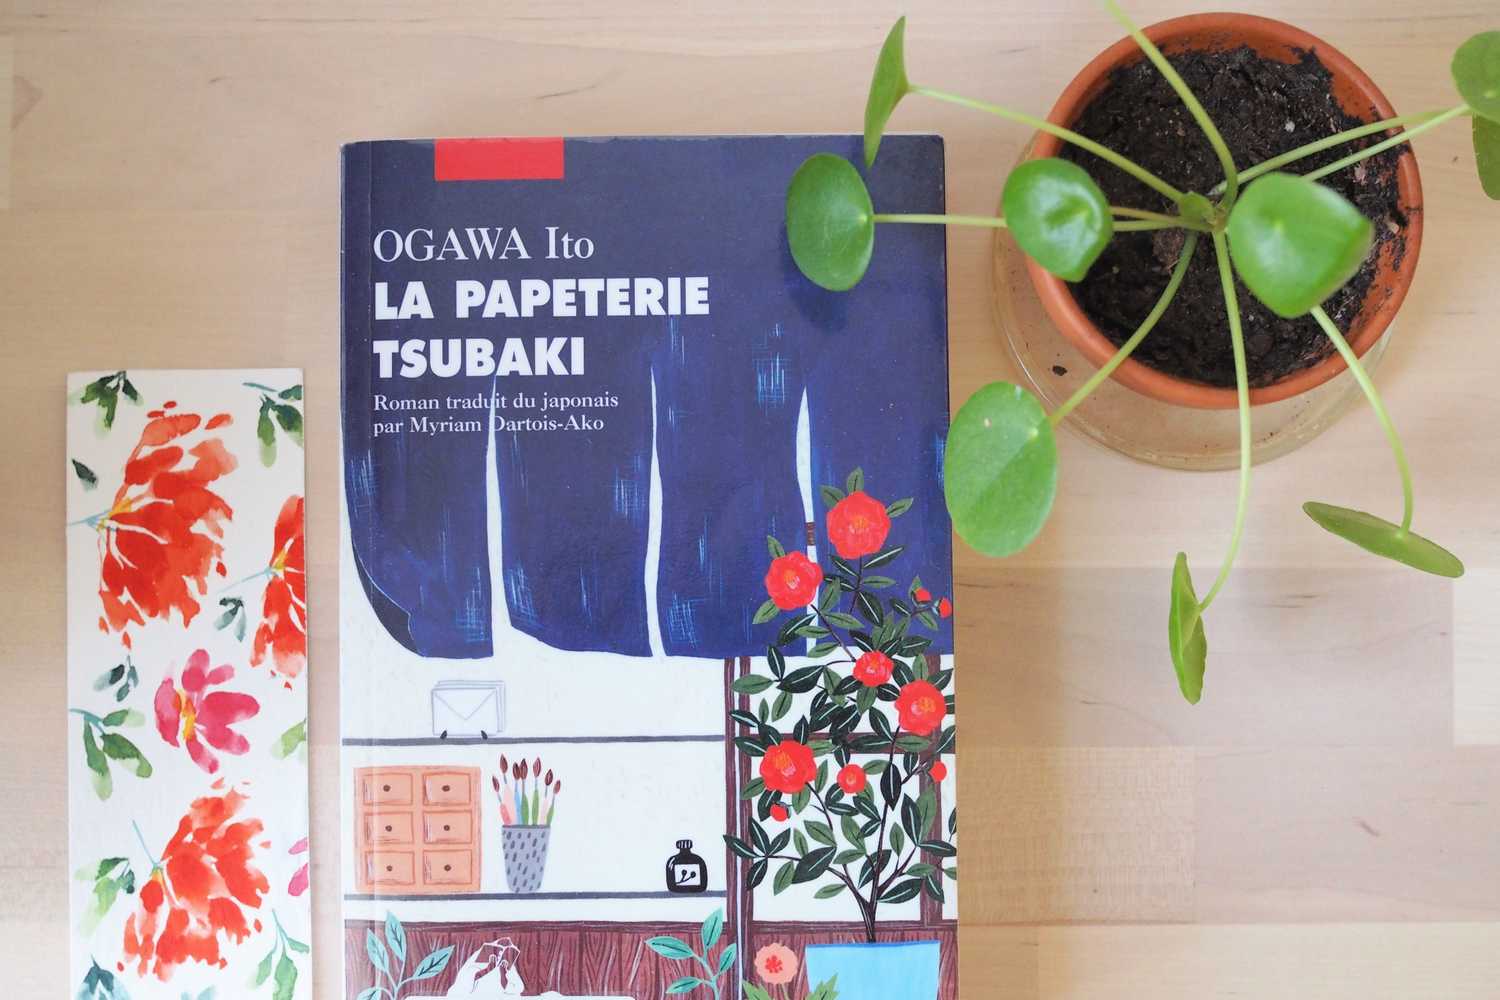 Je te présente ce super livre La papeterie Tsubaki de Ogawa Ito sortie